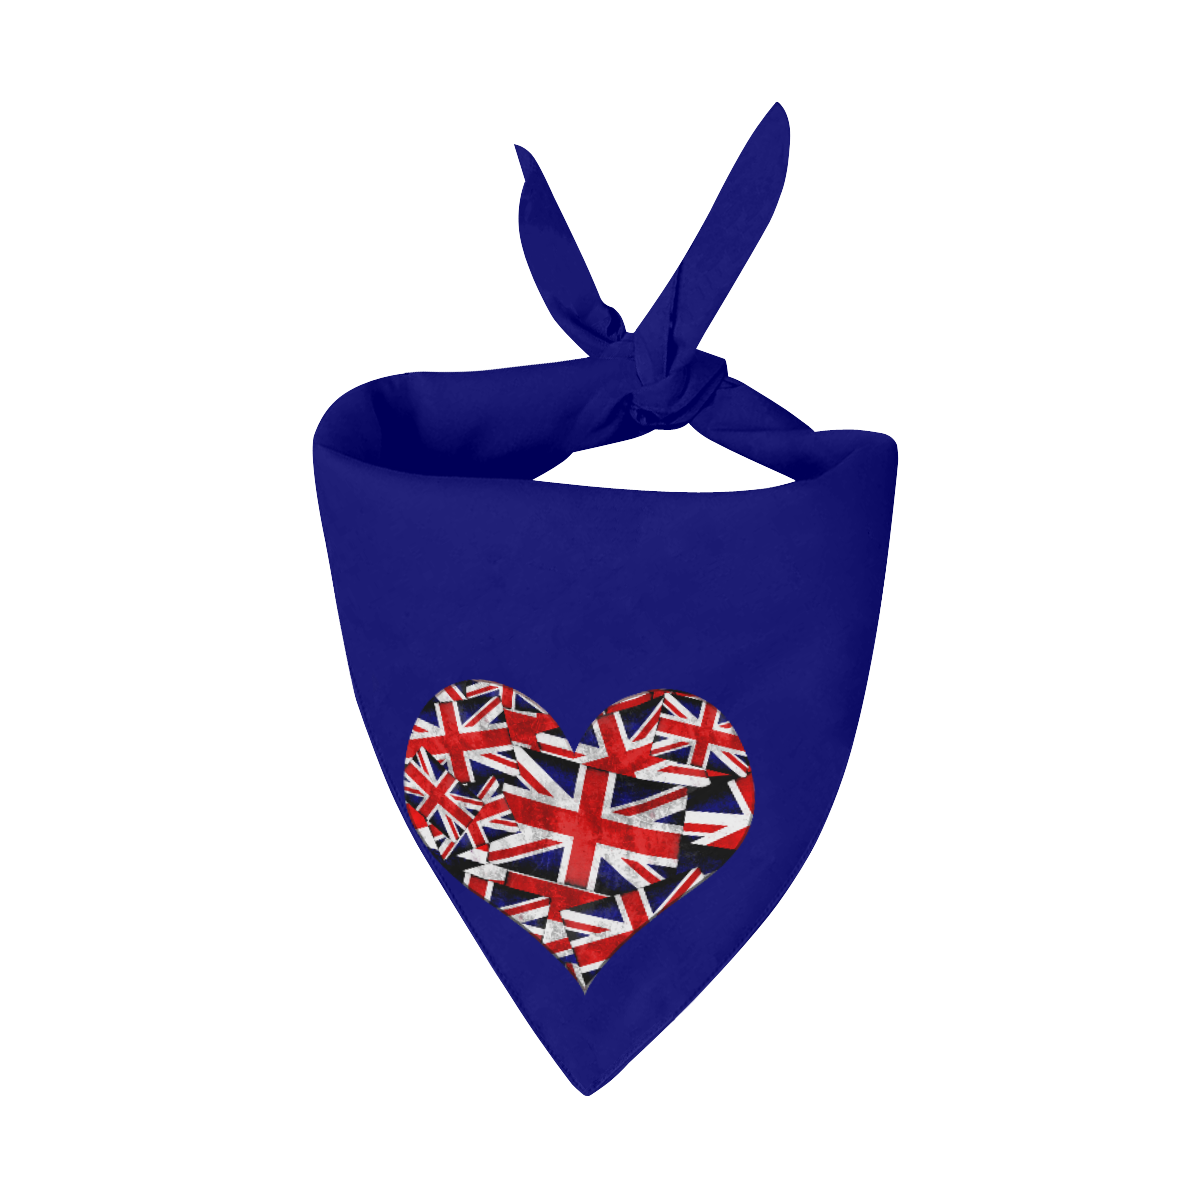 Union Jack British UK Flag Heart Blue Pet Dog Bandana/Large Size